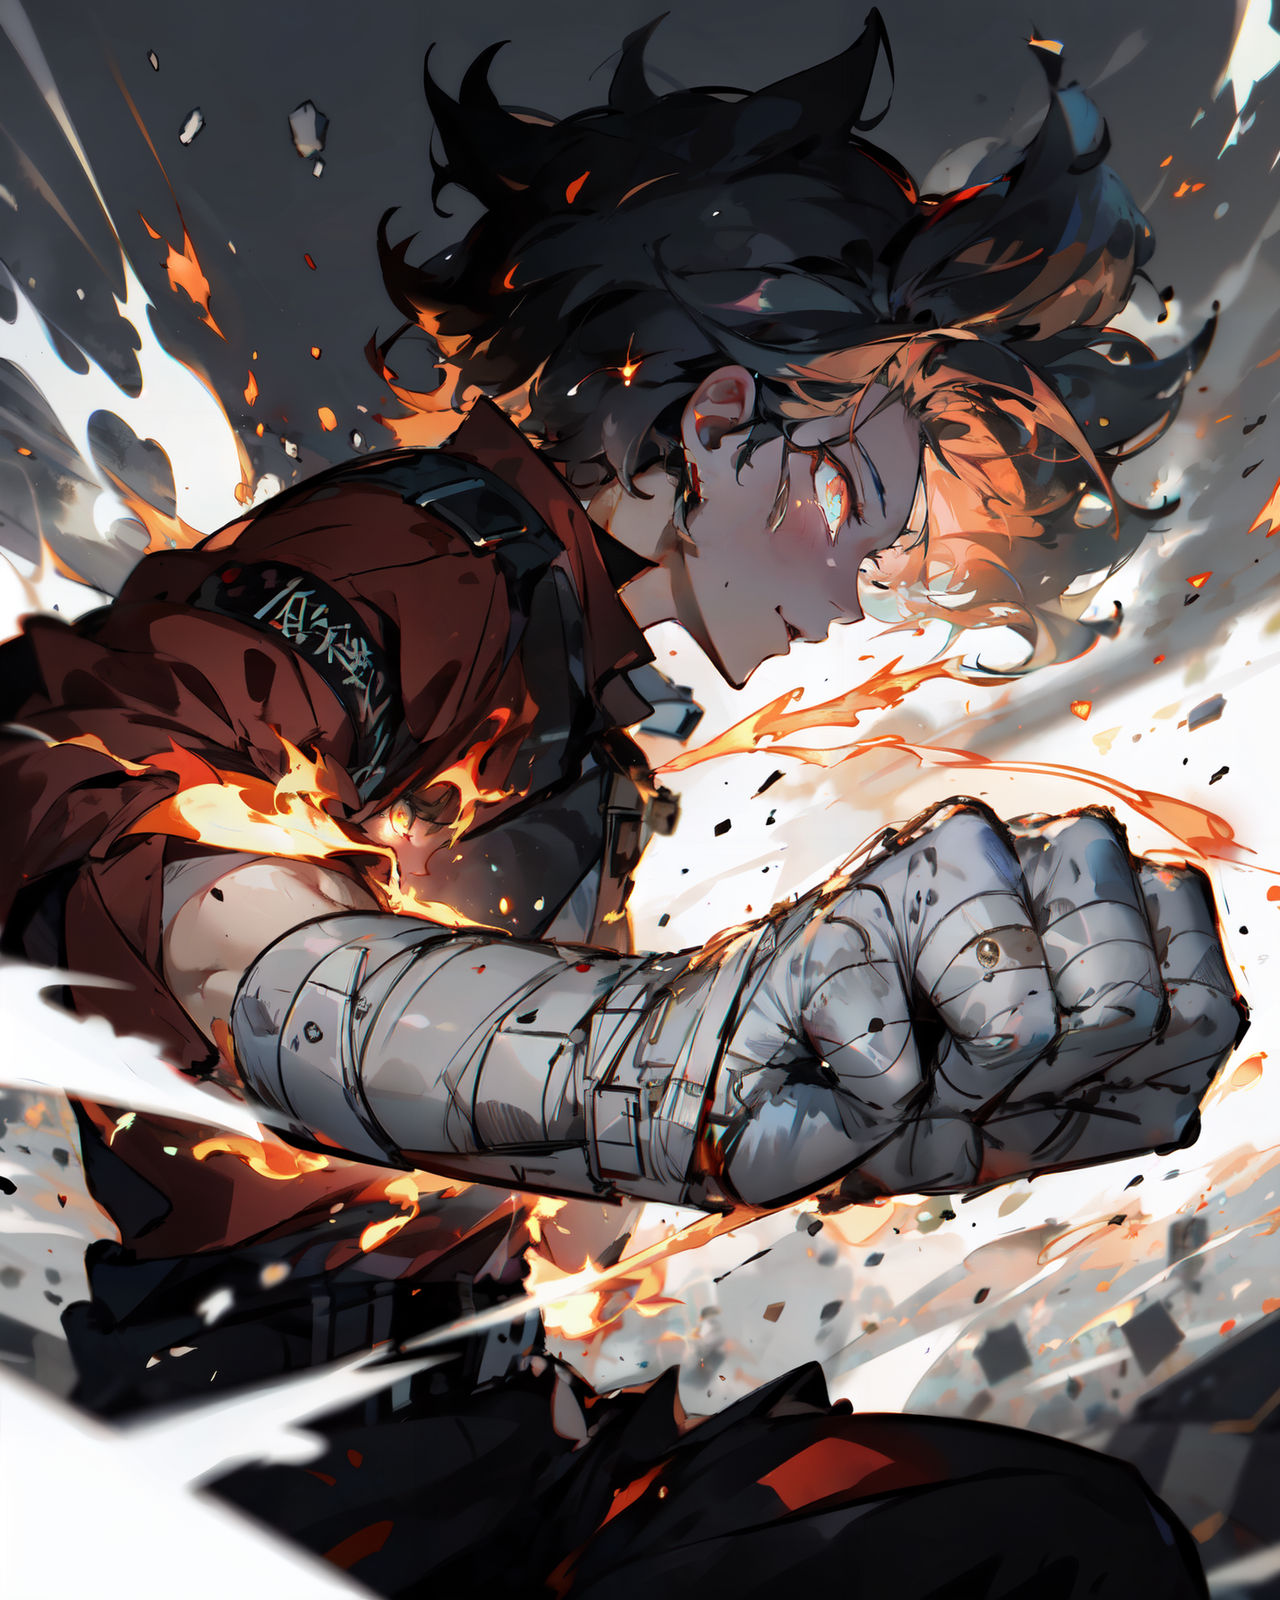 Anime Fight Scene 4 by Repliee on DeviantArt